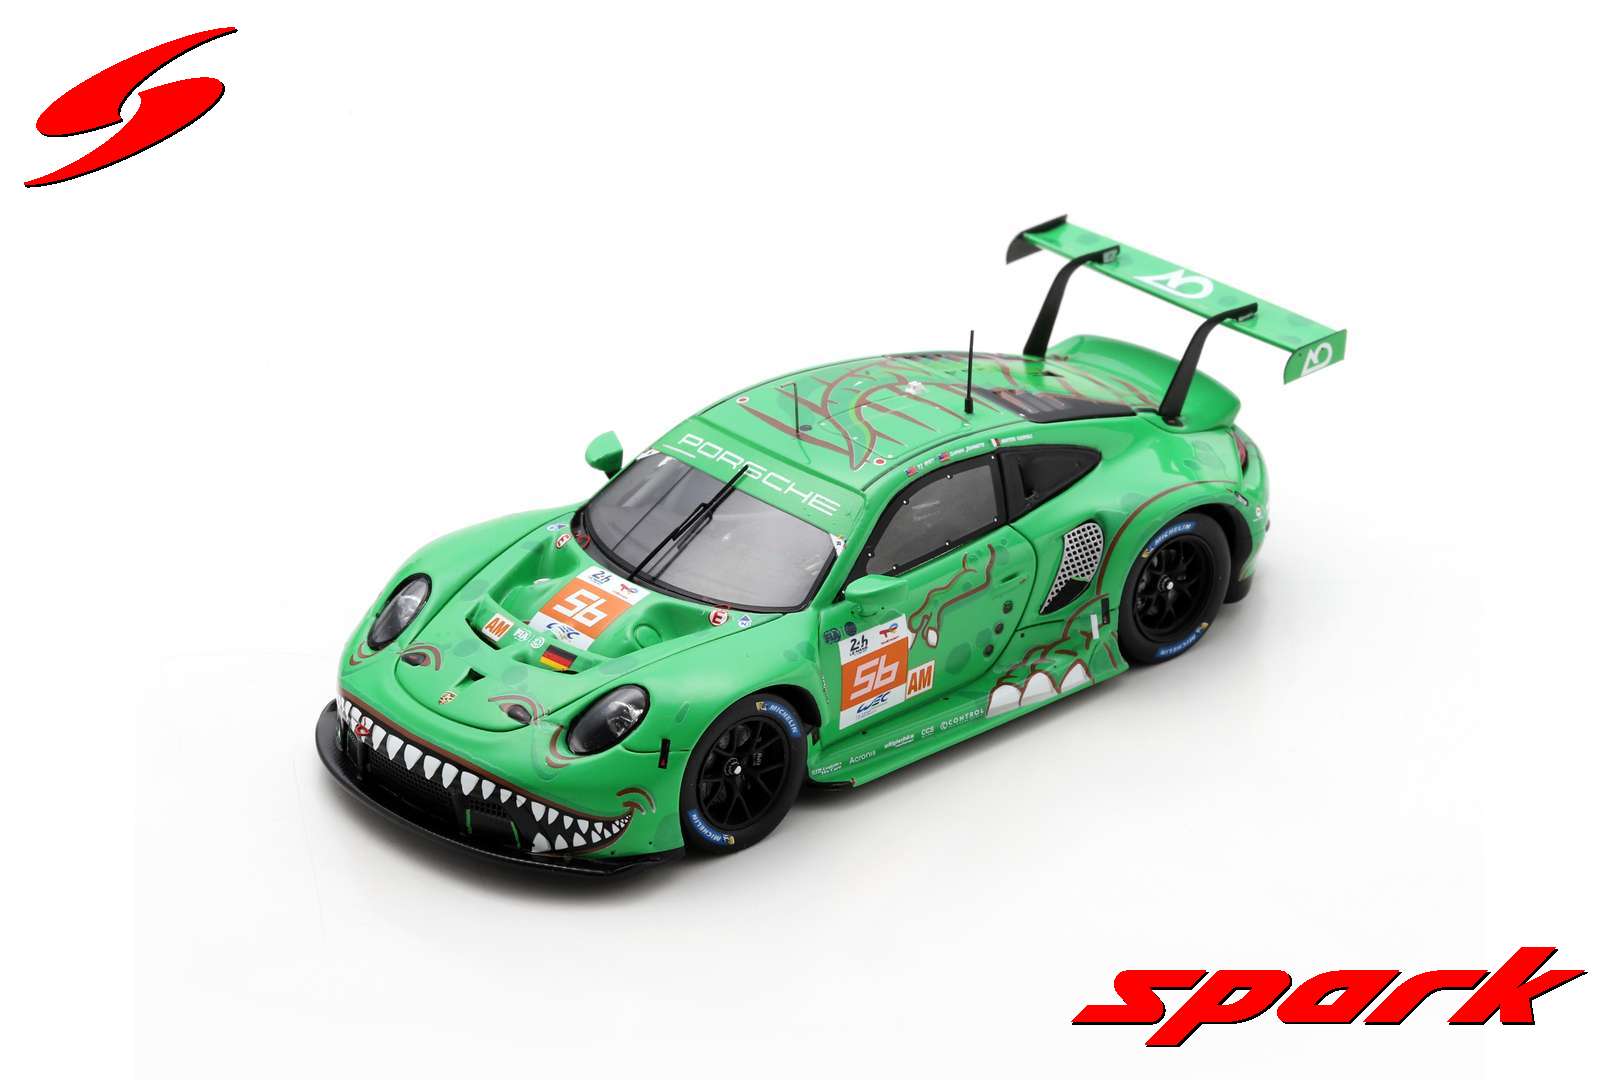 Spark S8762 1/43 Porsche 911 RSR - 19 No.56 PROJECT 1 - AO Le Mans 